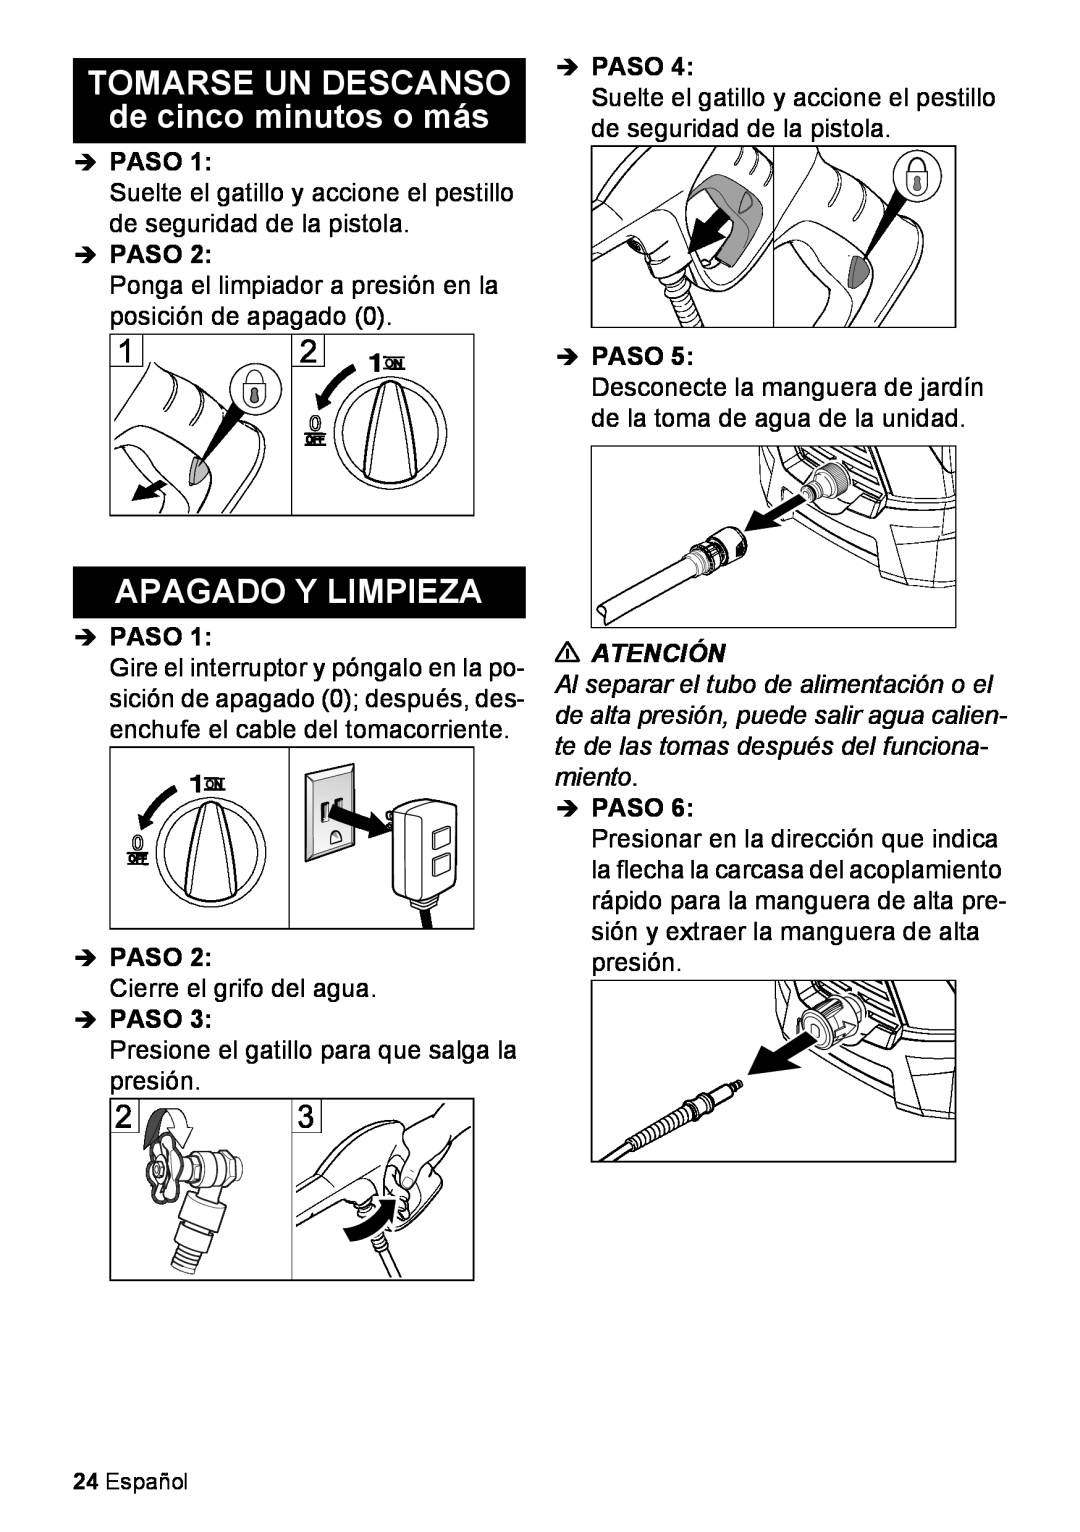 Karcher K 2.425 manual TOMARSE UN DESCANSO de cinco minutos o más, Apagado Y Limpieza, Atención, Español 